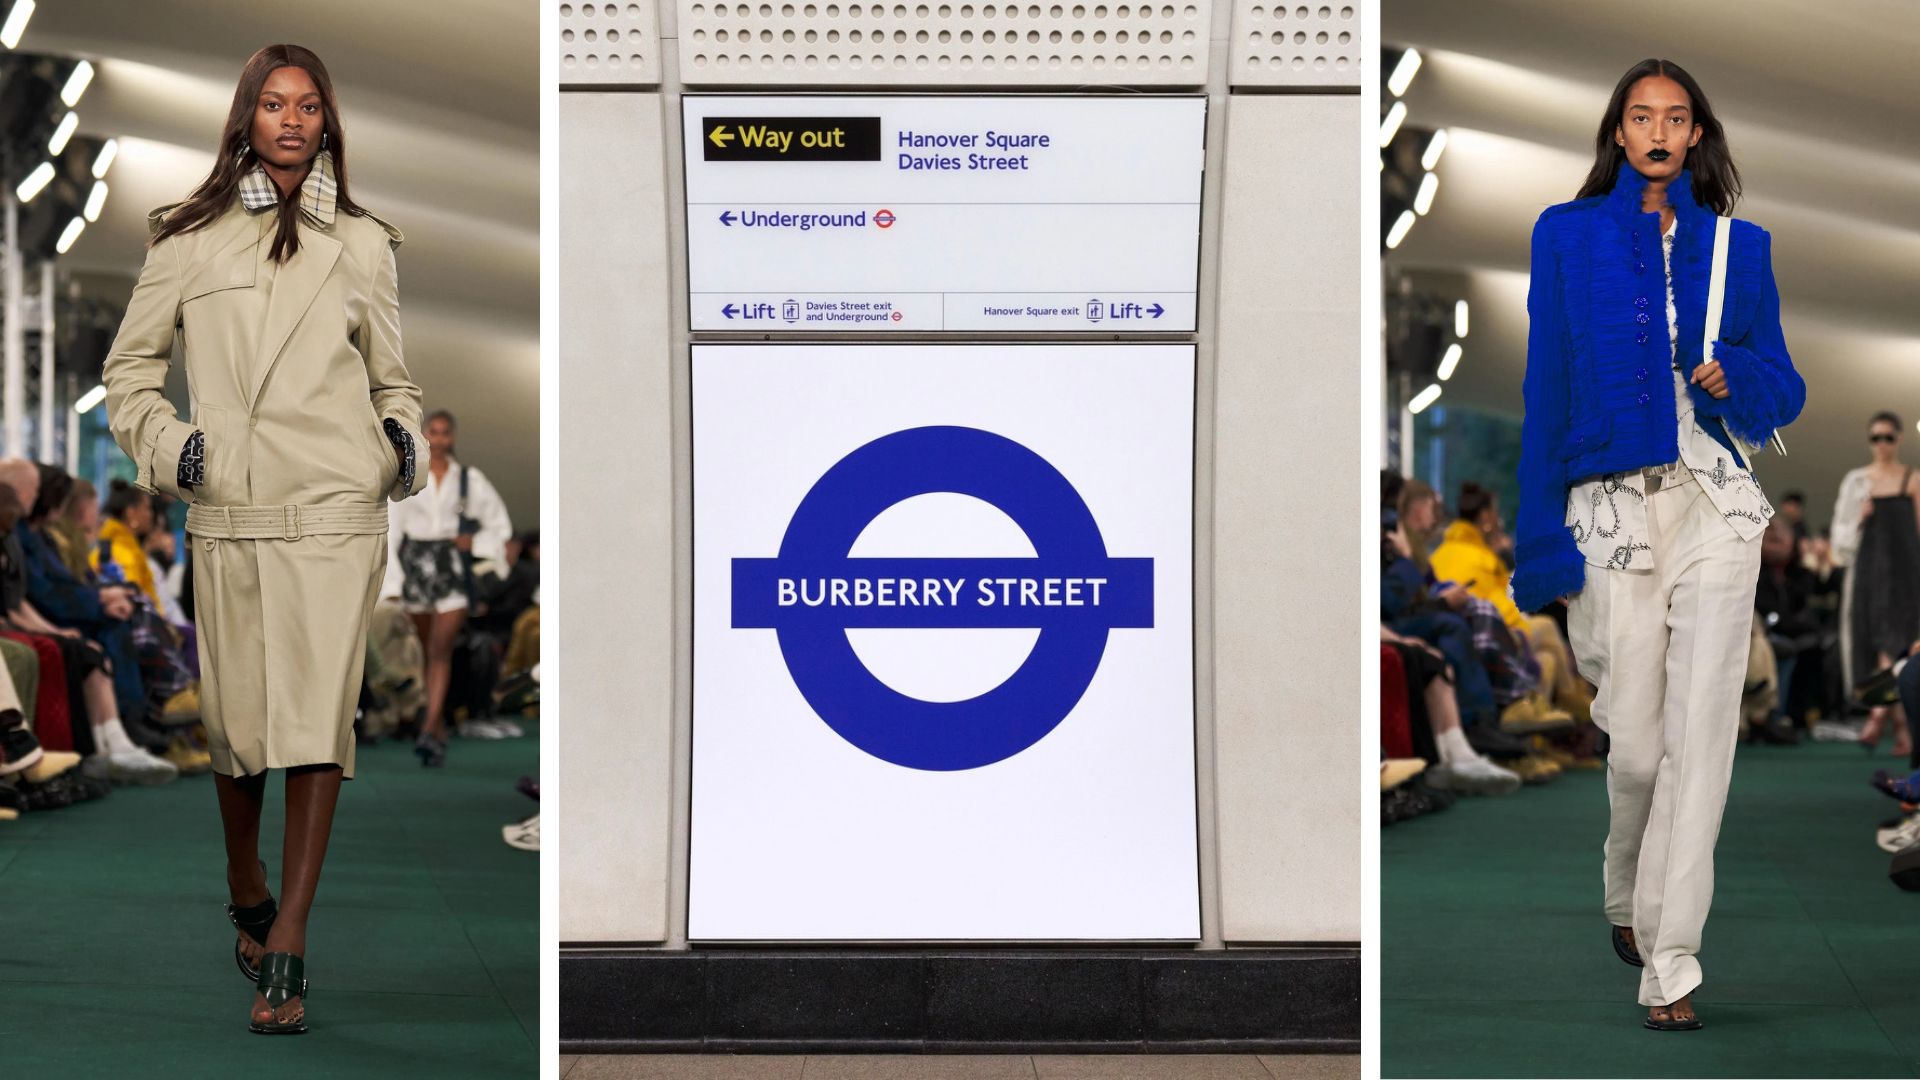 Regarder la vidéo Burberry a renommé une station de métro, et tout Londres était déboussolé